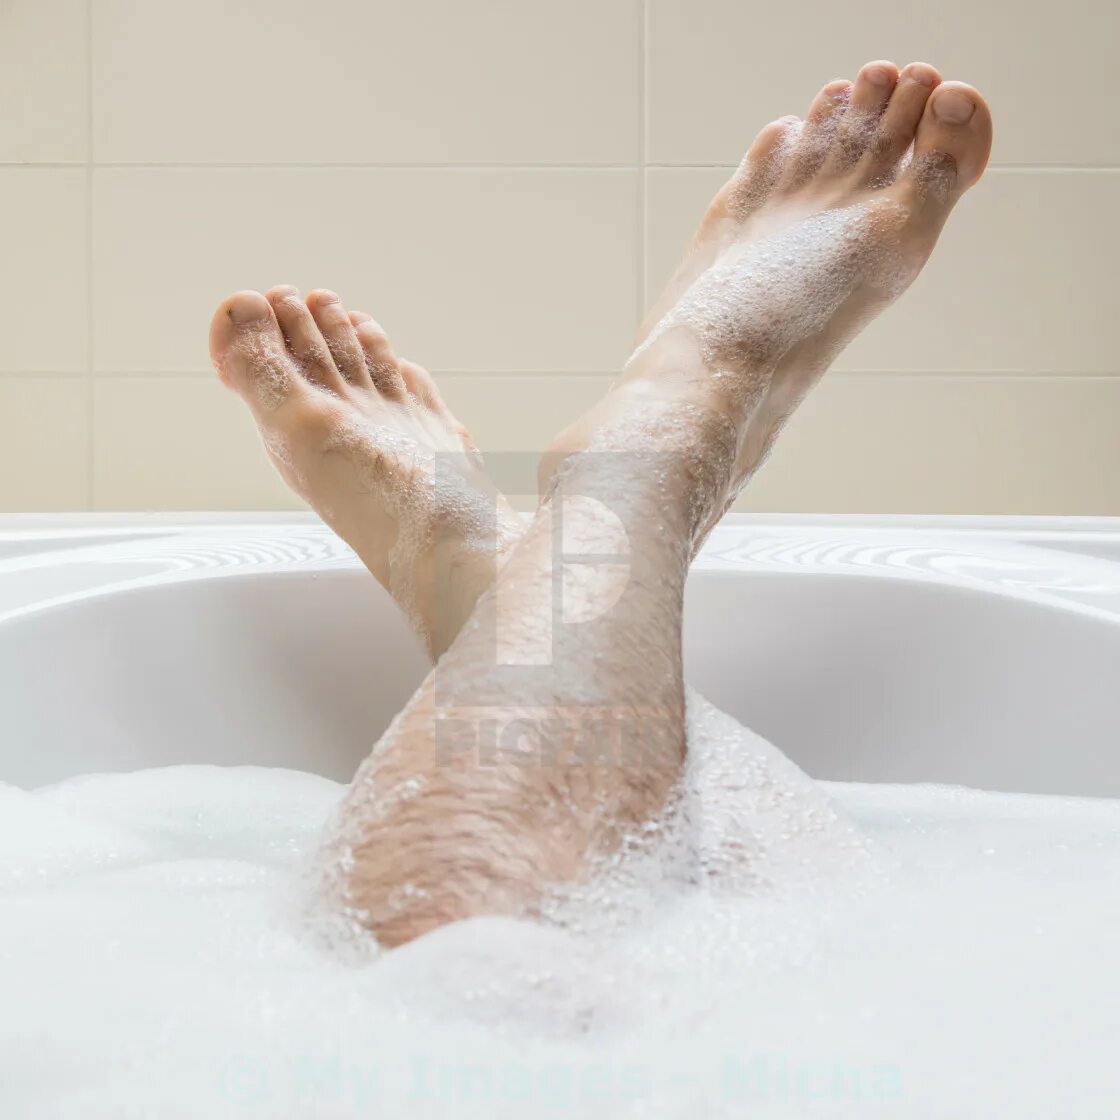 Парень в ванне купается. Мужские ножки в ванной. Мужские ноги в ванной с пеной. Красивые мужские ноги в ванной. Ноги парня в ванной.